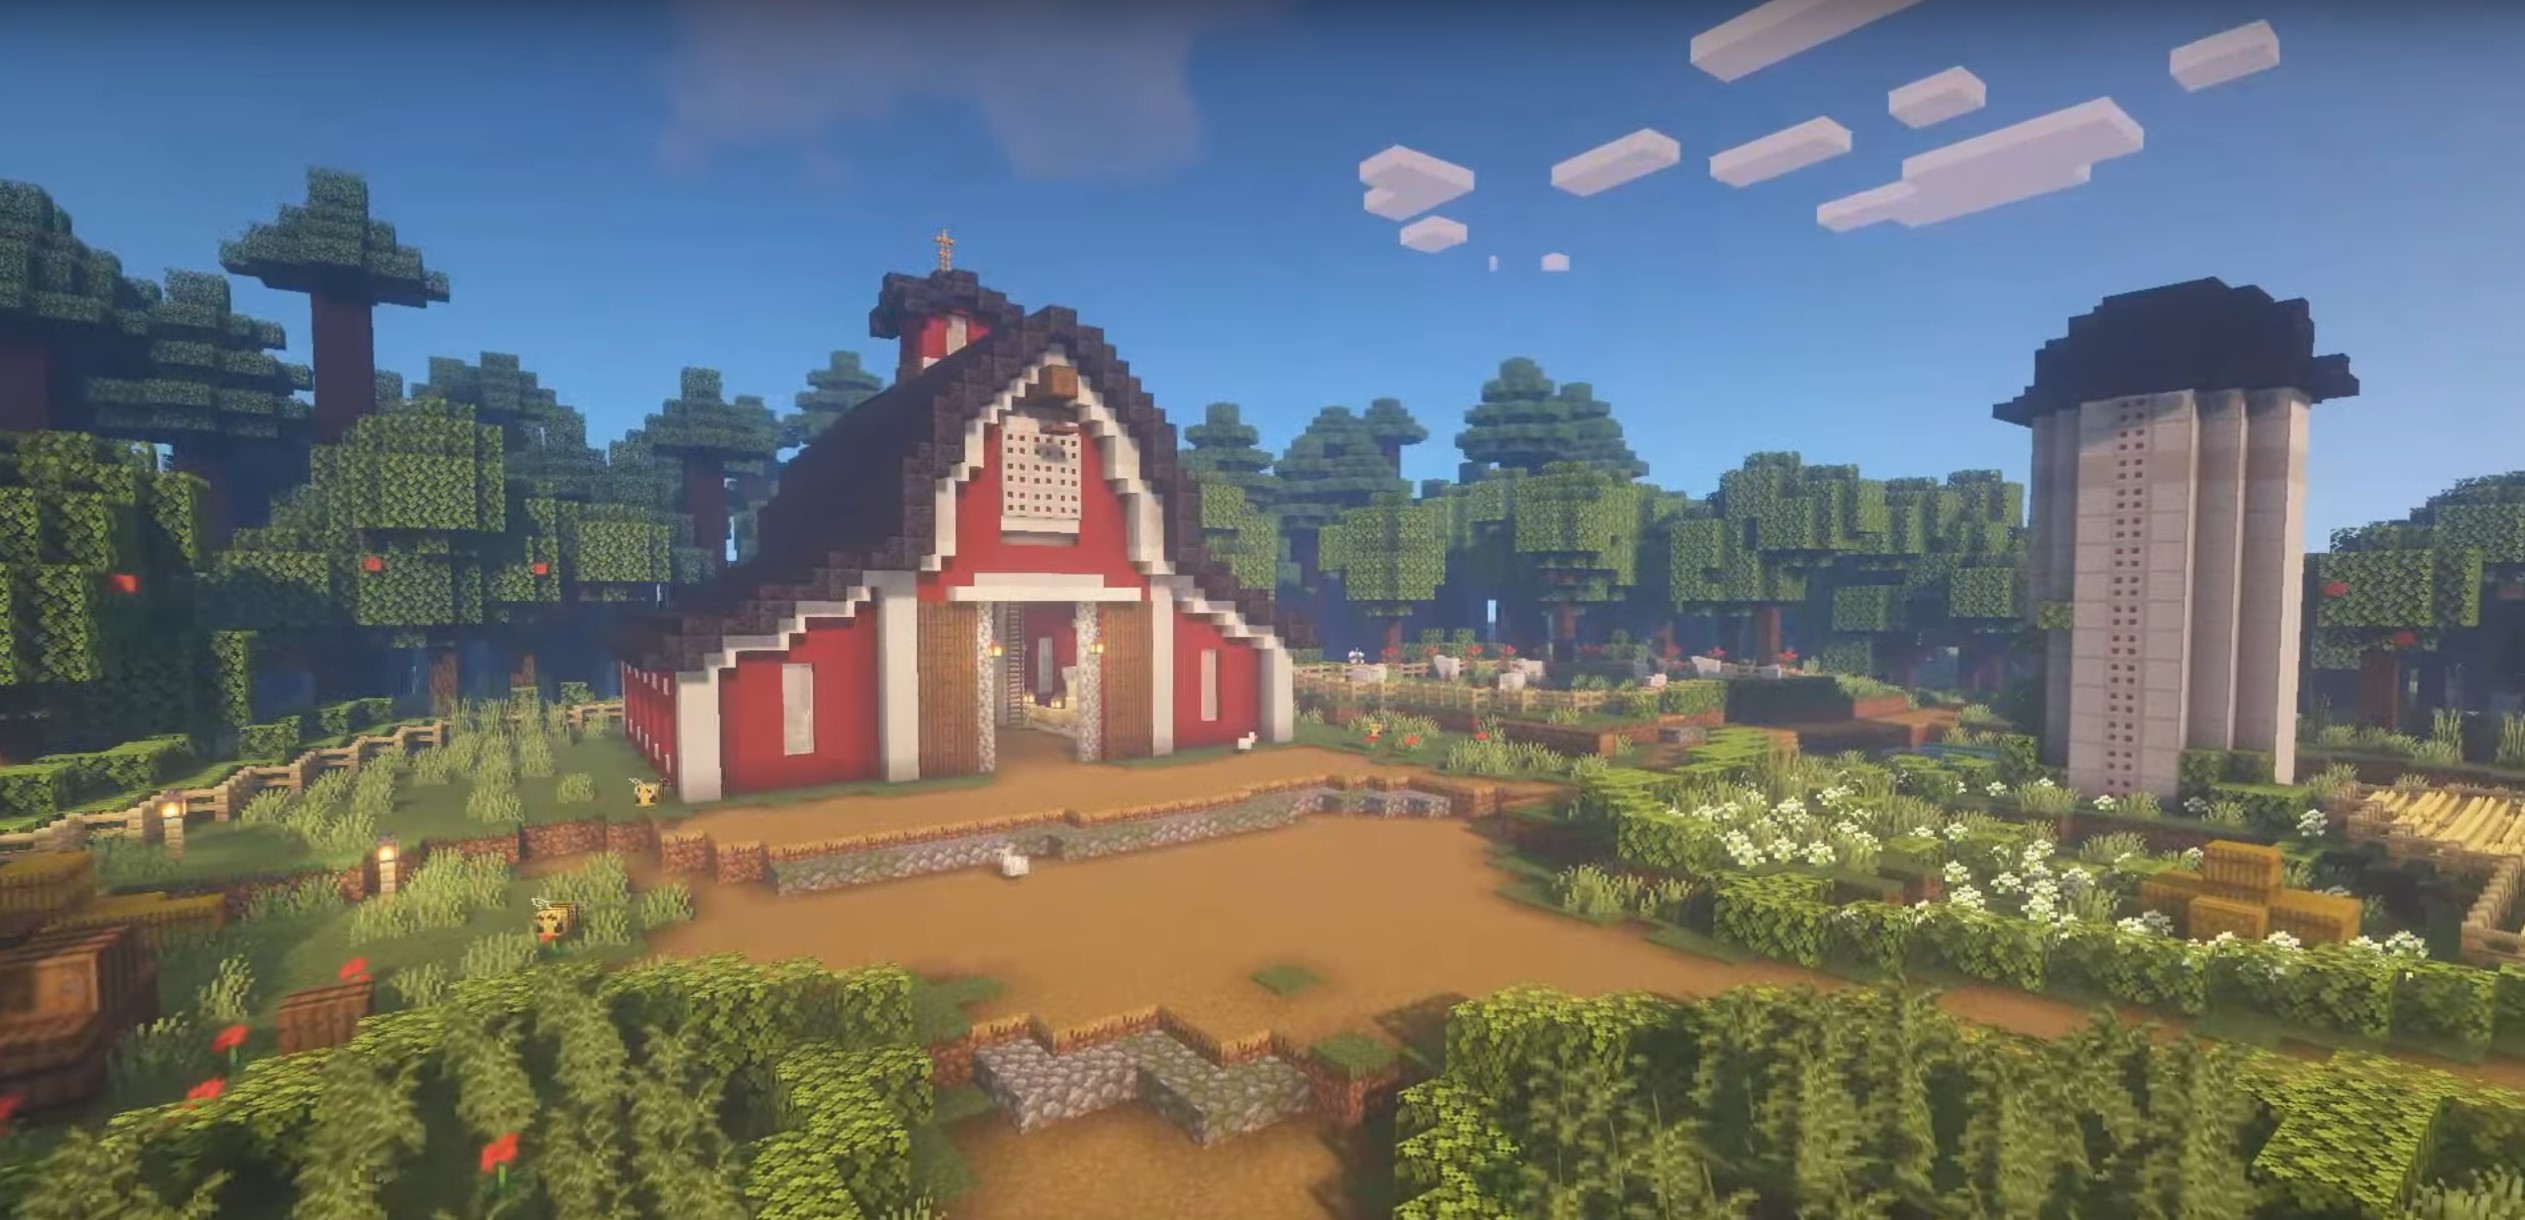 Red Barn minecraft building idea